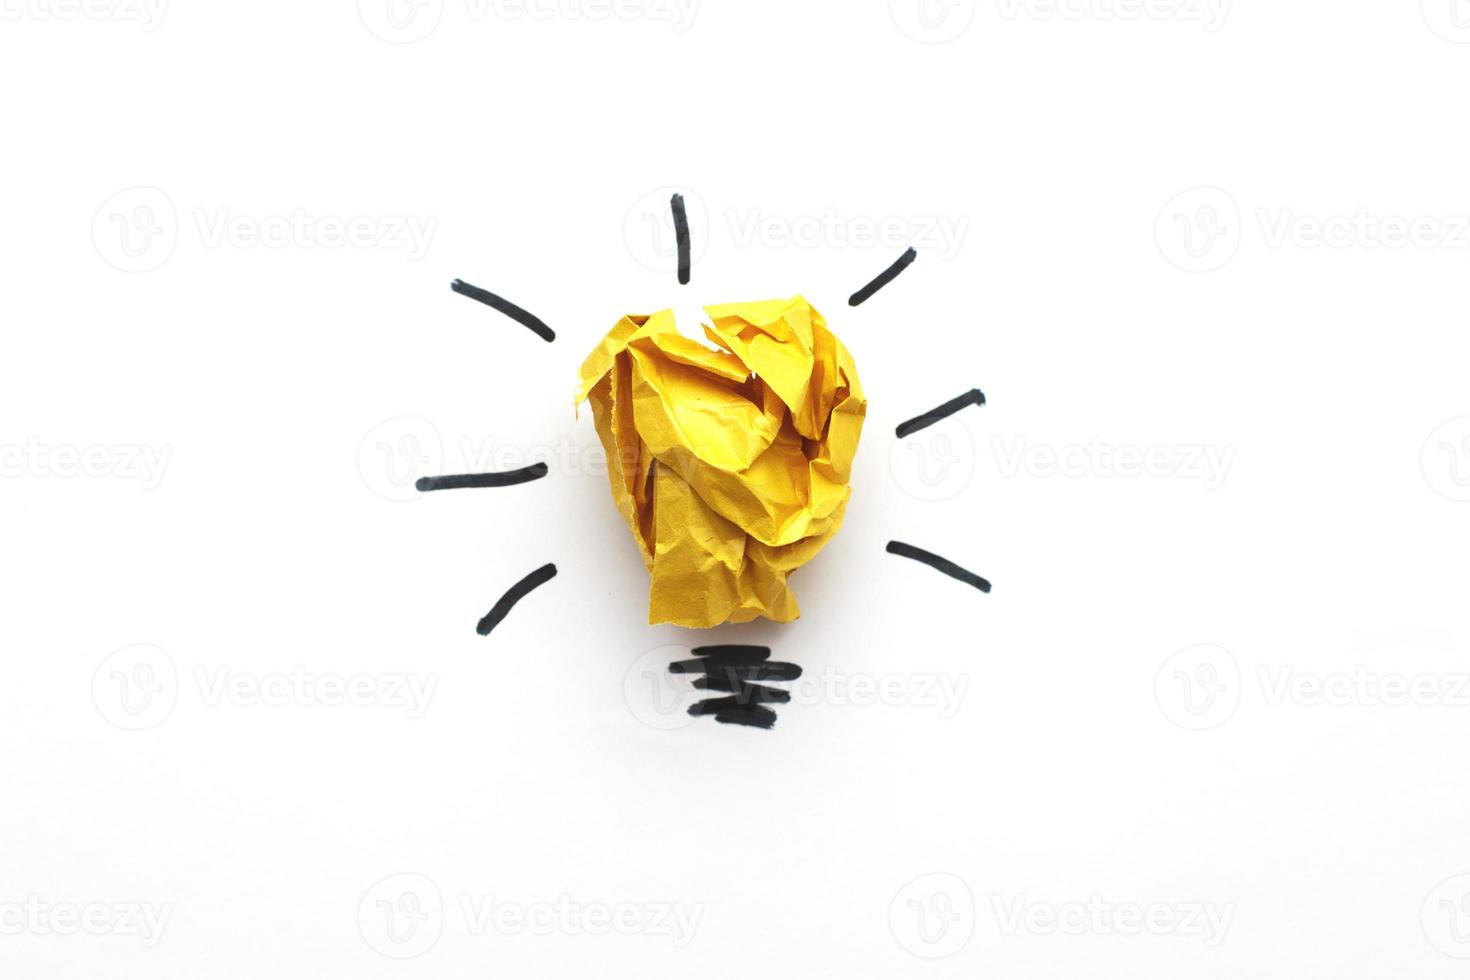 skrynkliga yelllow papper lampa som en begrepp kreativ aning och innovation foto